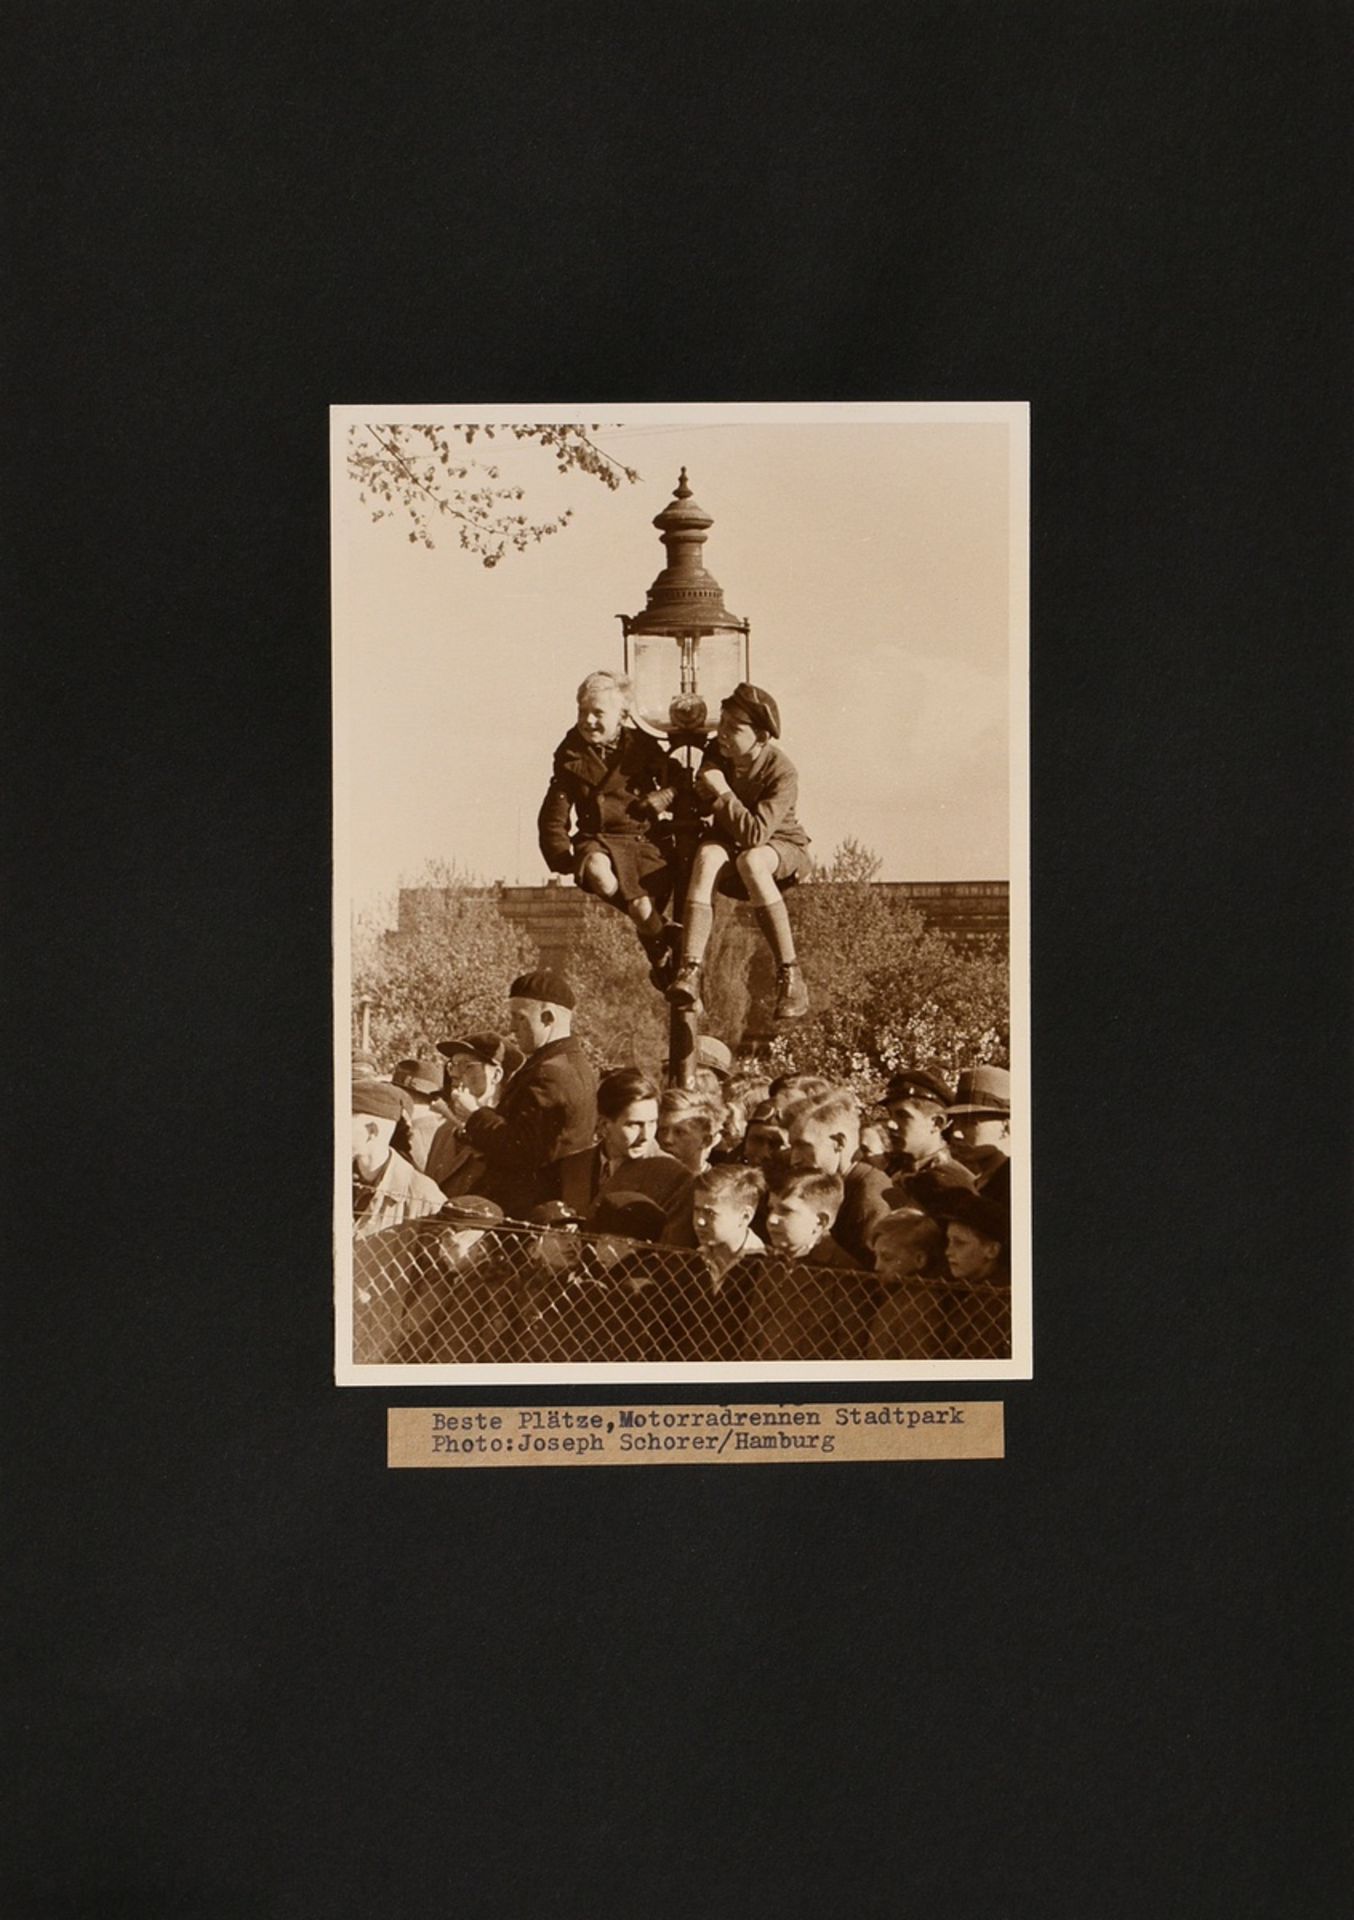 Schorer, Joseph (1894-1946) "Beste Plätze, Motorradrennen Stadtpark", Fotografie, auf Karton montie - Bild 2 aus 5